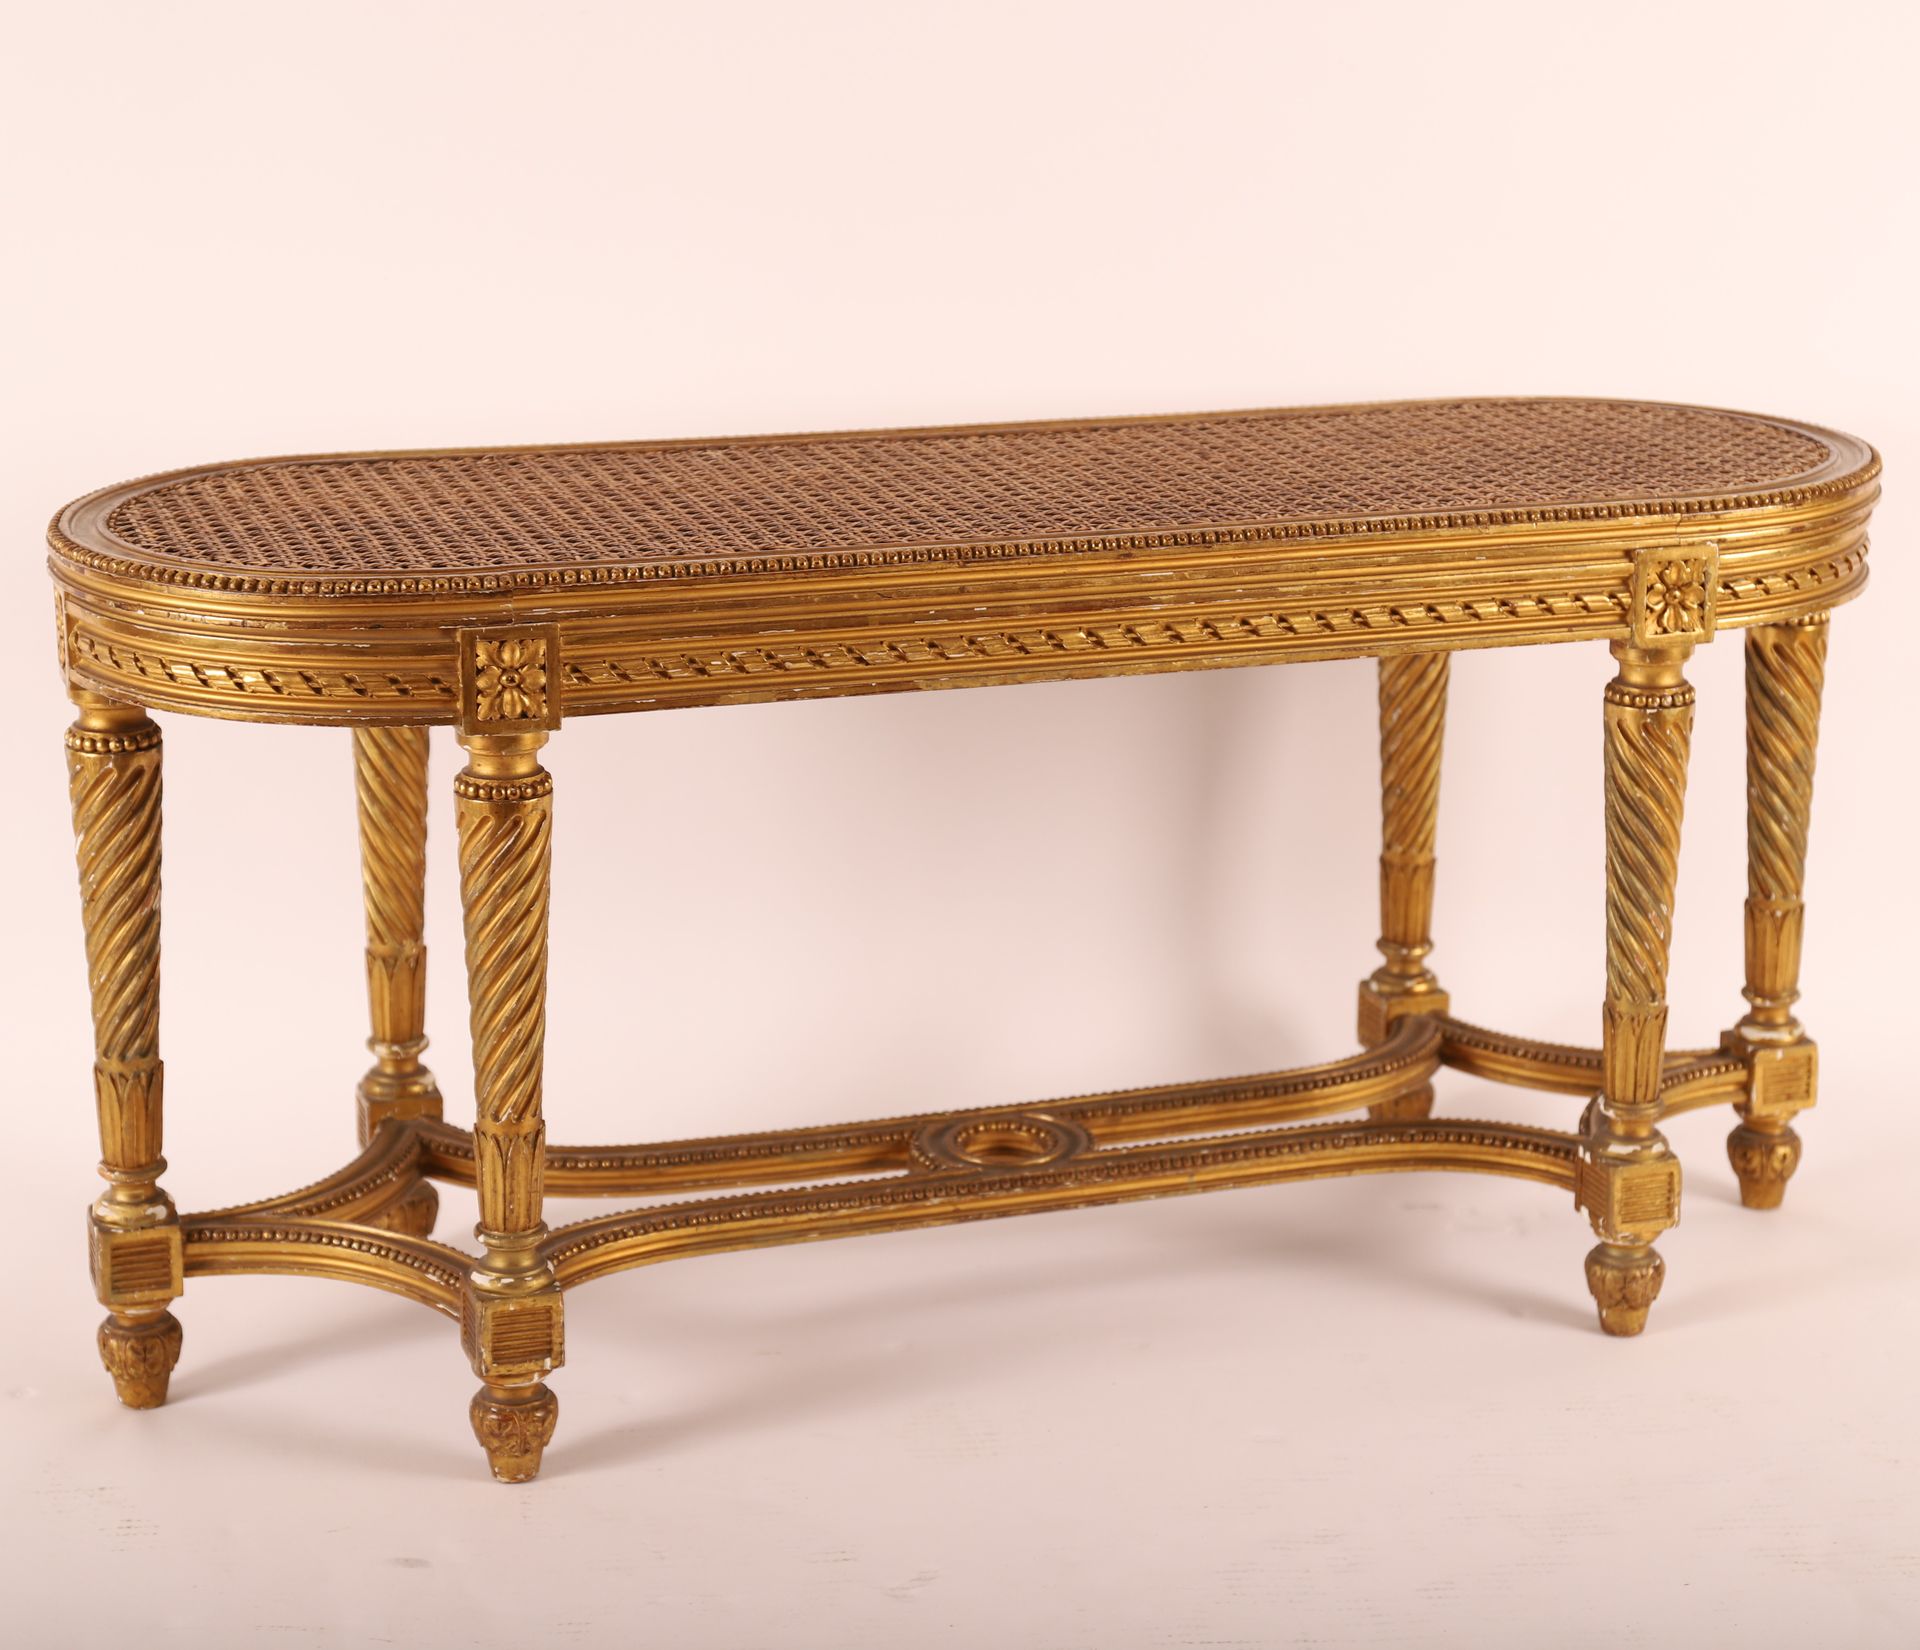 Null Banco de madera dorada LOUIS XVI, siglo XIX

Asiento con caña 

Piernas ret&hellip;